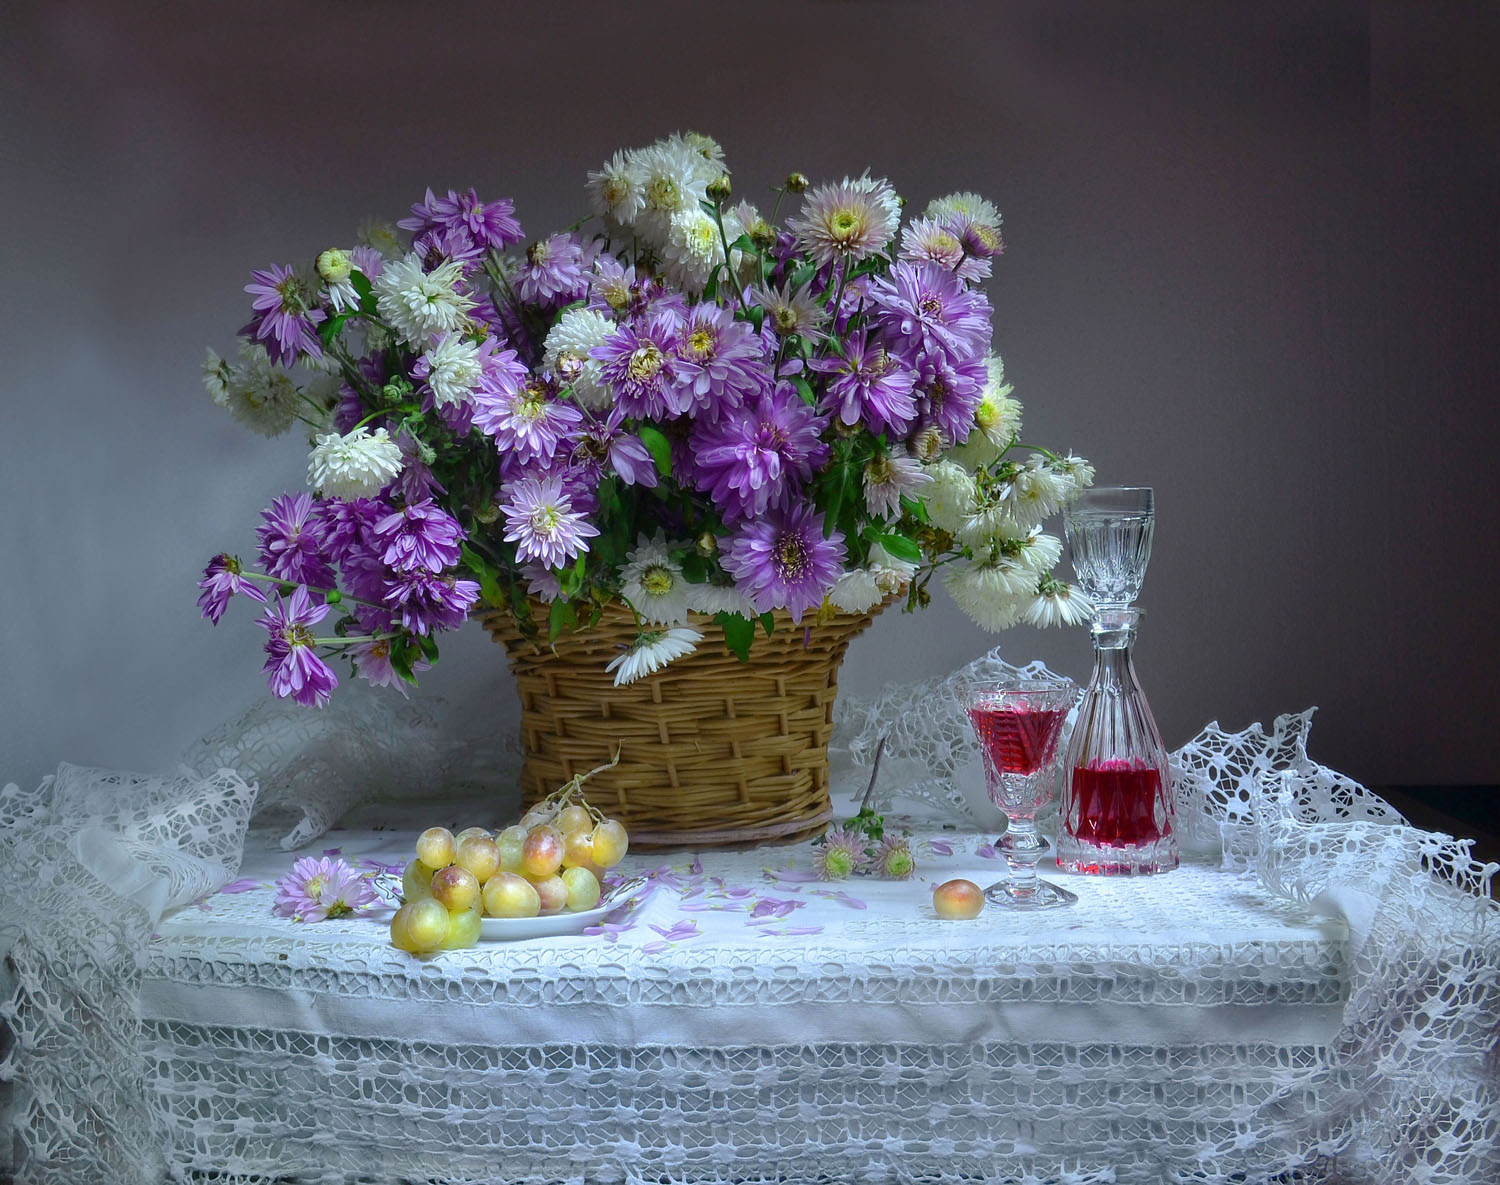 Осень – разлука срывает вуаль... розовые хризантемы осень октябрь фото натюрморт виноград настроение хрусталь стихи